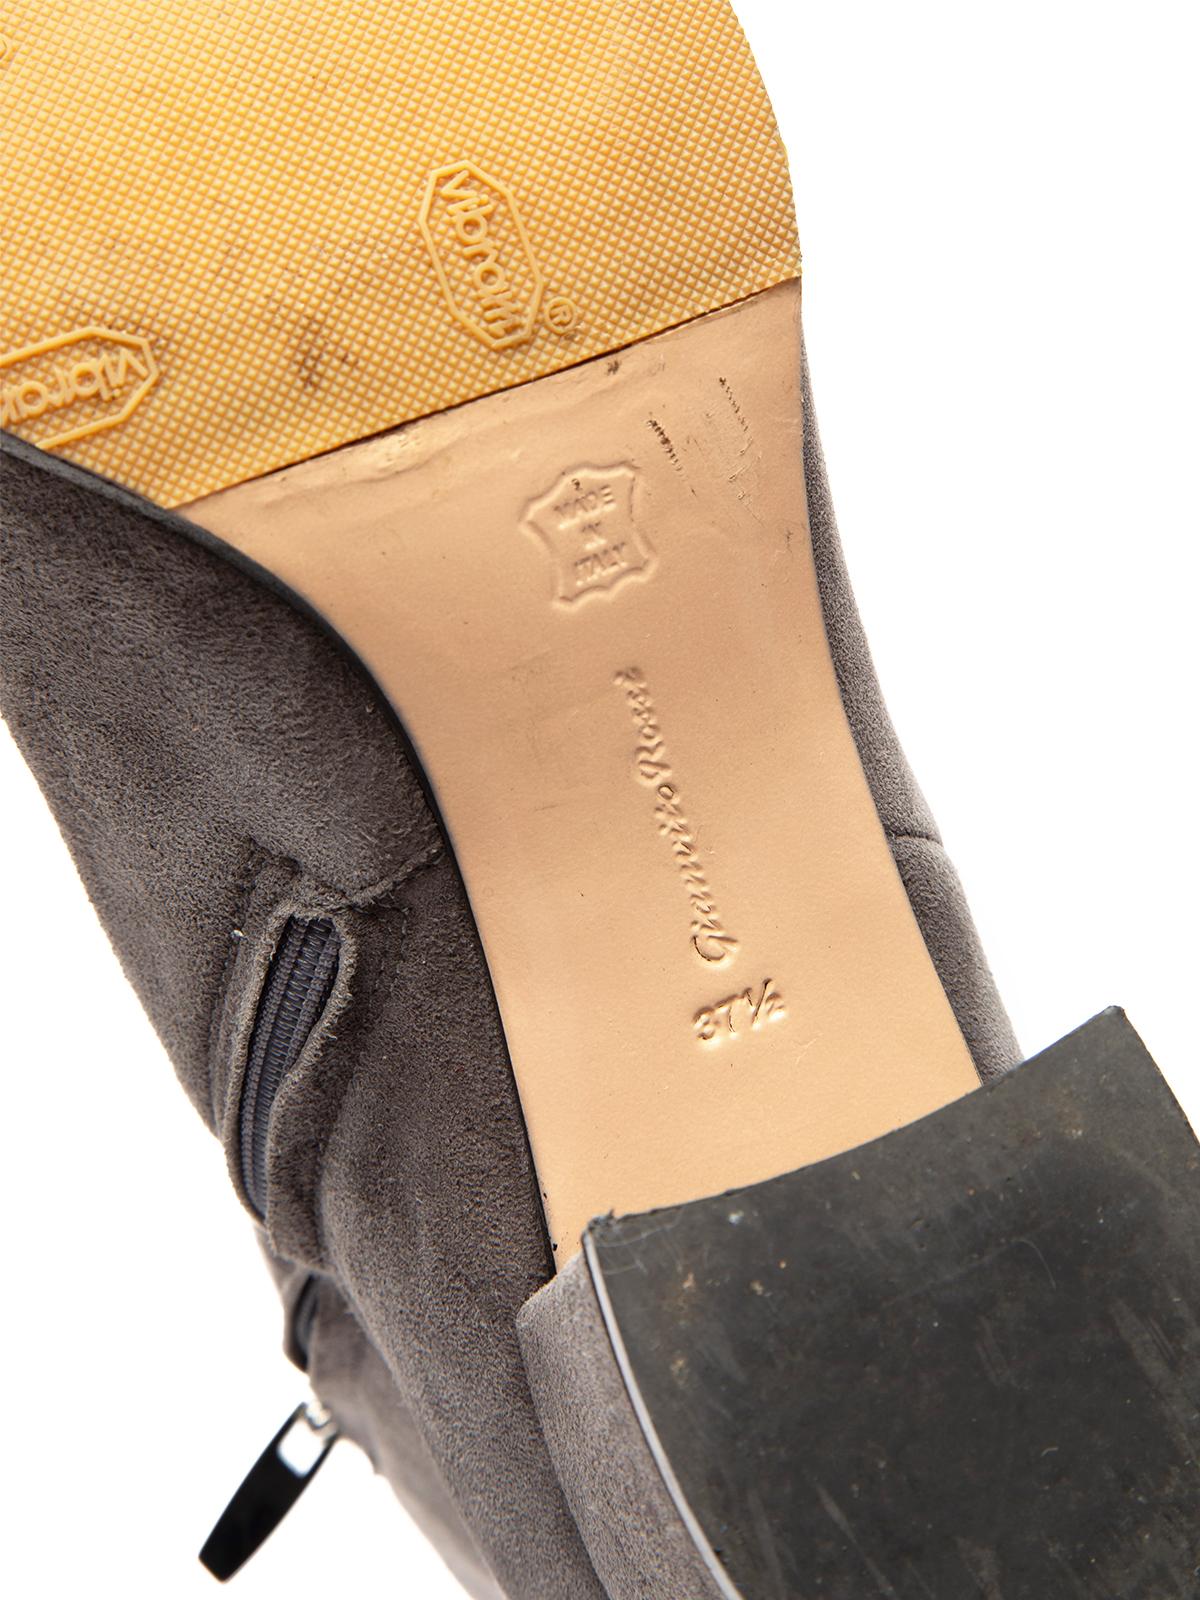 Pre-Loved Gianvito Rossi Women's Grey Suede Block Heel Boots 2